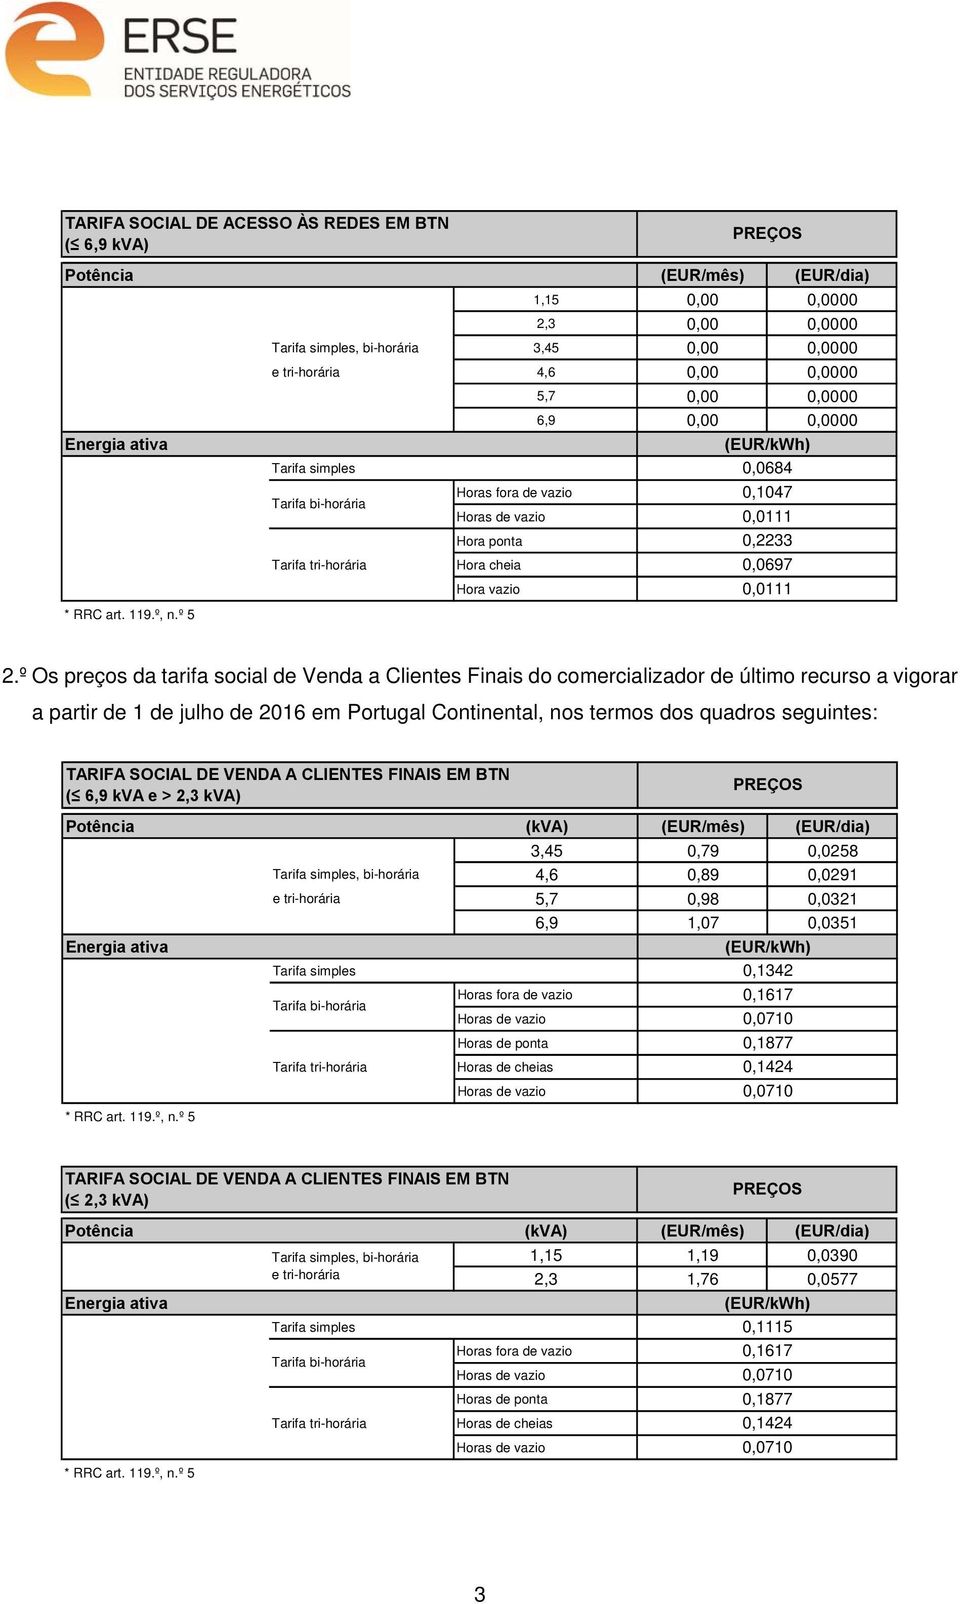 º Os preços da tarifa social de Venda a Clientes Finais do comercializador de último recurso a vigorar a partir de 1 de julho de 2016 em Portugal Continental, nos termos dos quadros seguintes: TARIFA